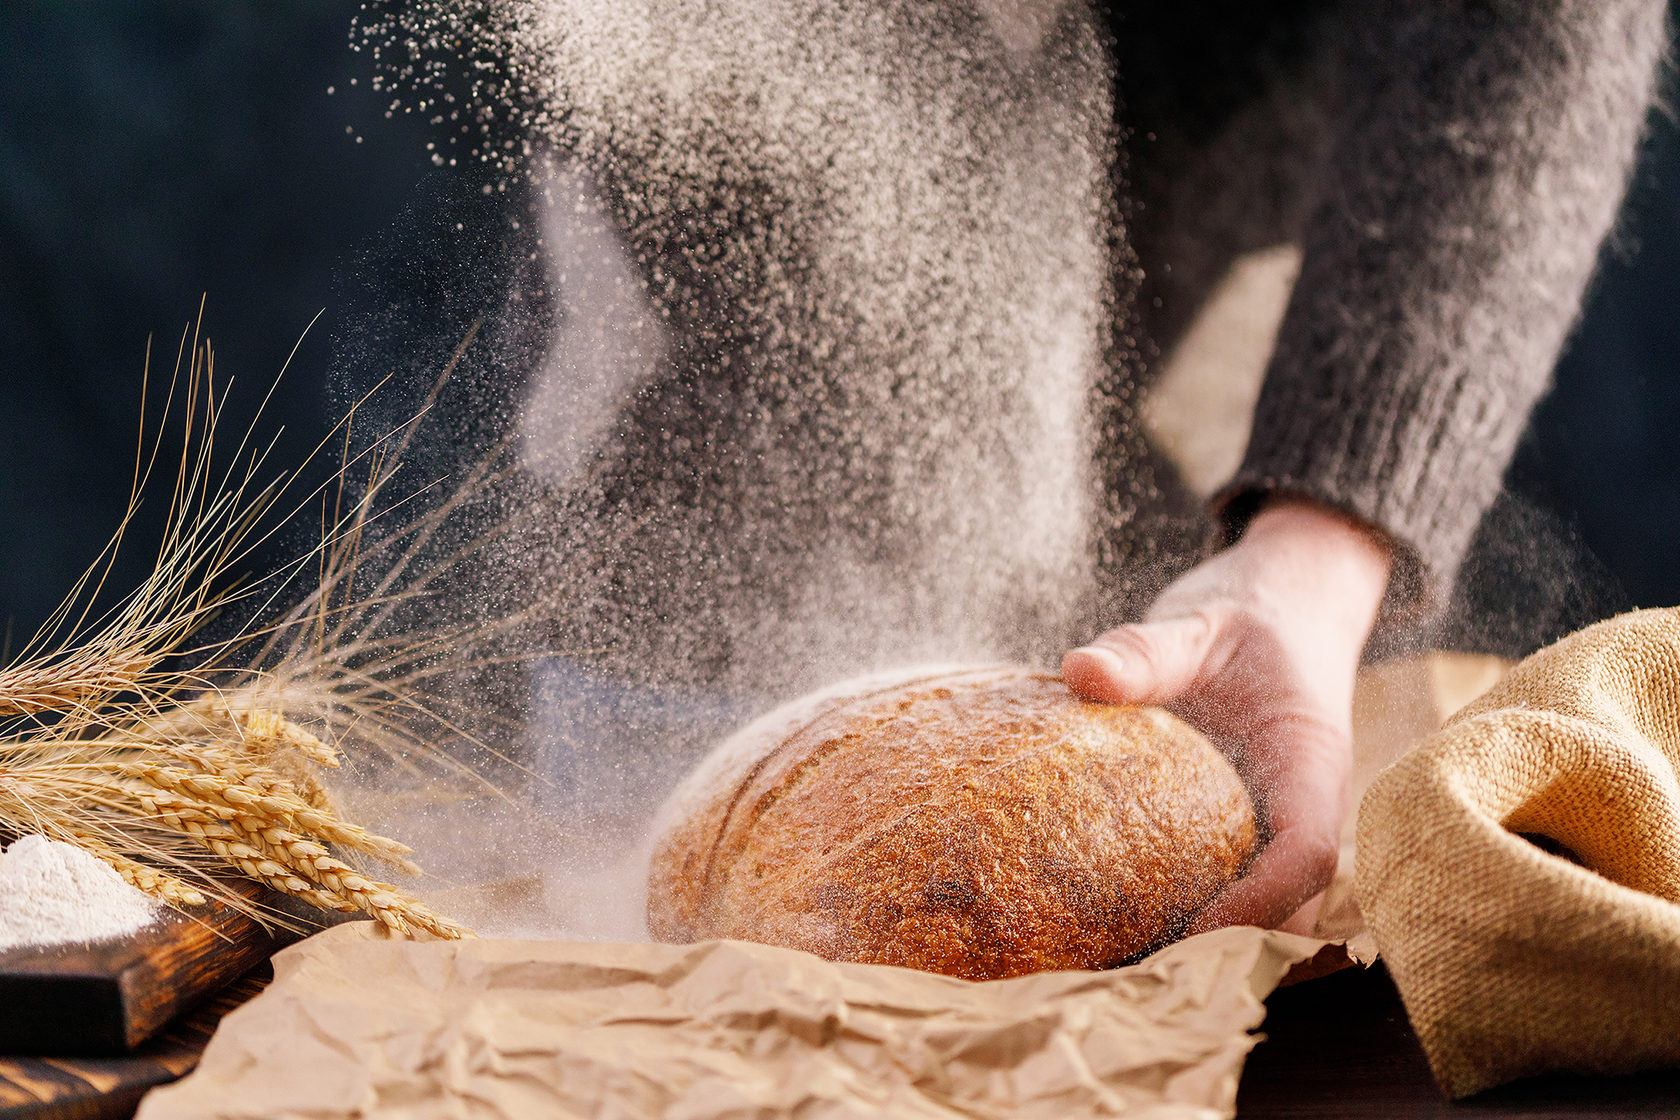 Четверо ножниц мягчайший хлеб поезжай быстрее пить. Пекарь в муке. Мука для хлеба. Руки хлебобулочные изделия. Хлеб в руках пекаря.